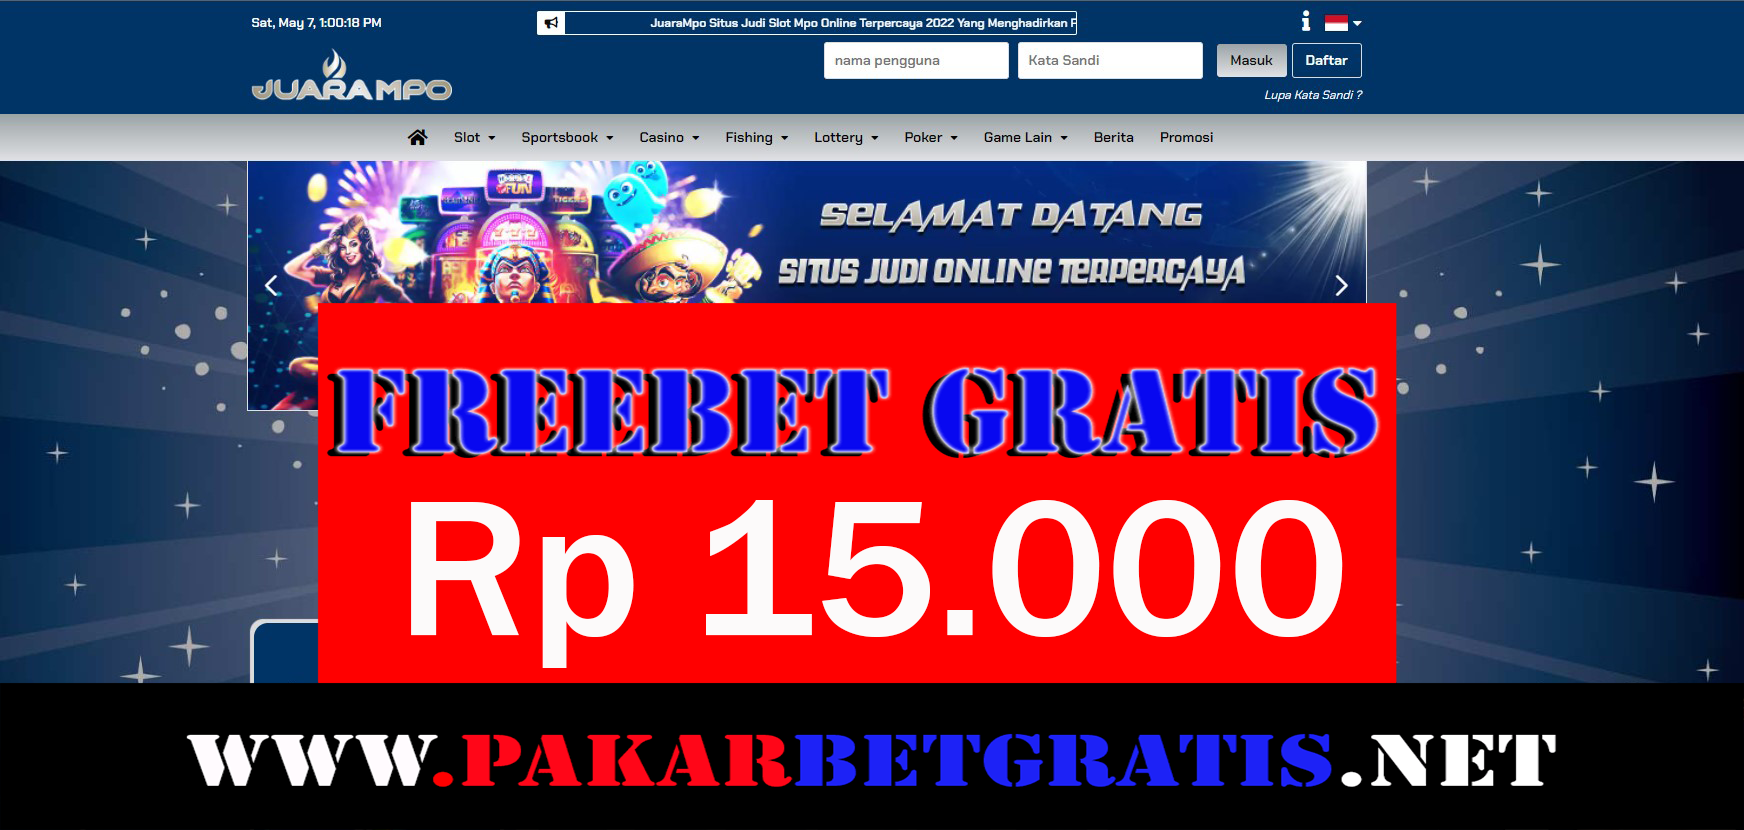 JuaraMpo Freebet Gratis Rp 15.000 Tanpa Deposit